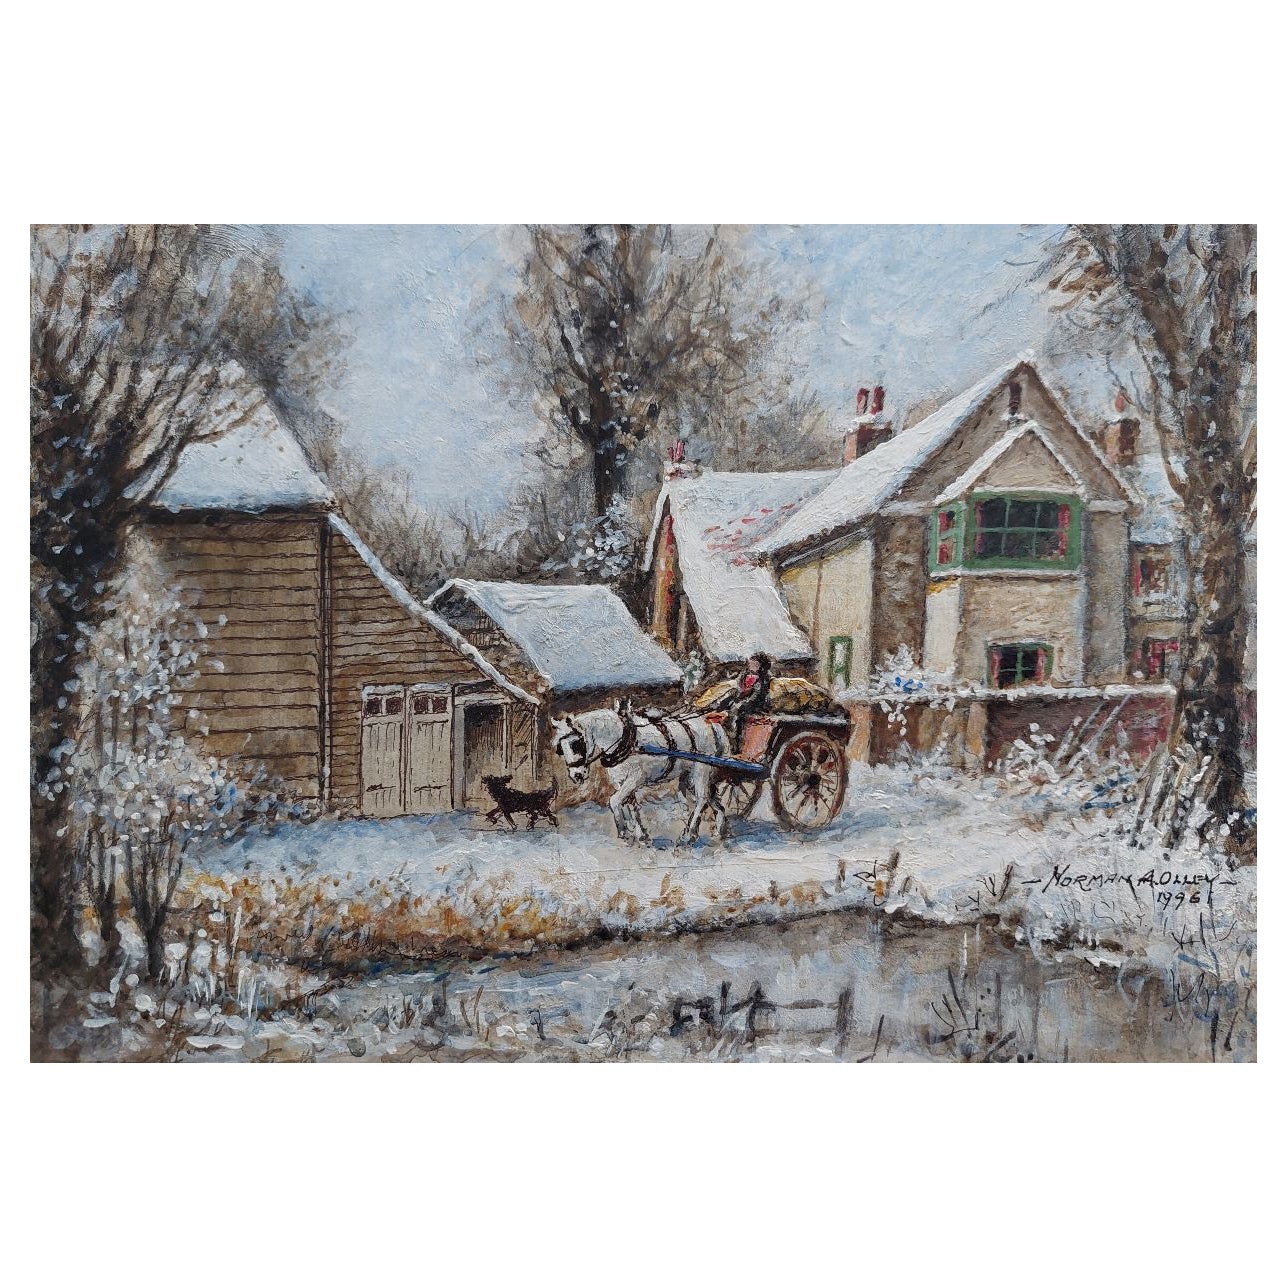 Peinture traditionnelle anglaise d'après-midi d'hiver, ferme du Surrey, Angleterre, cheval et chariot